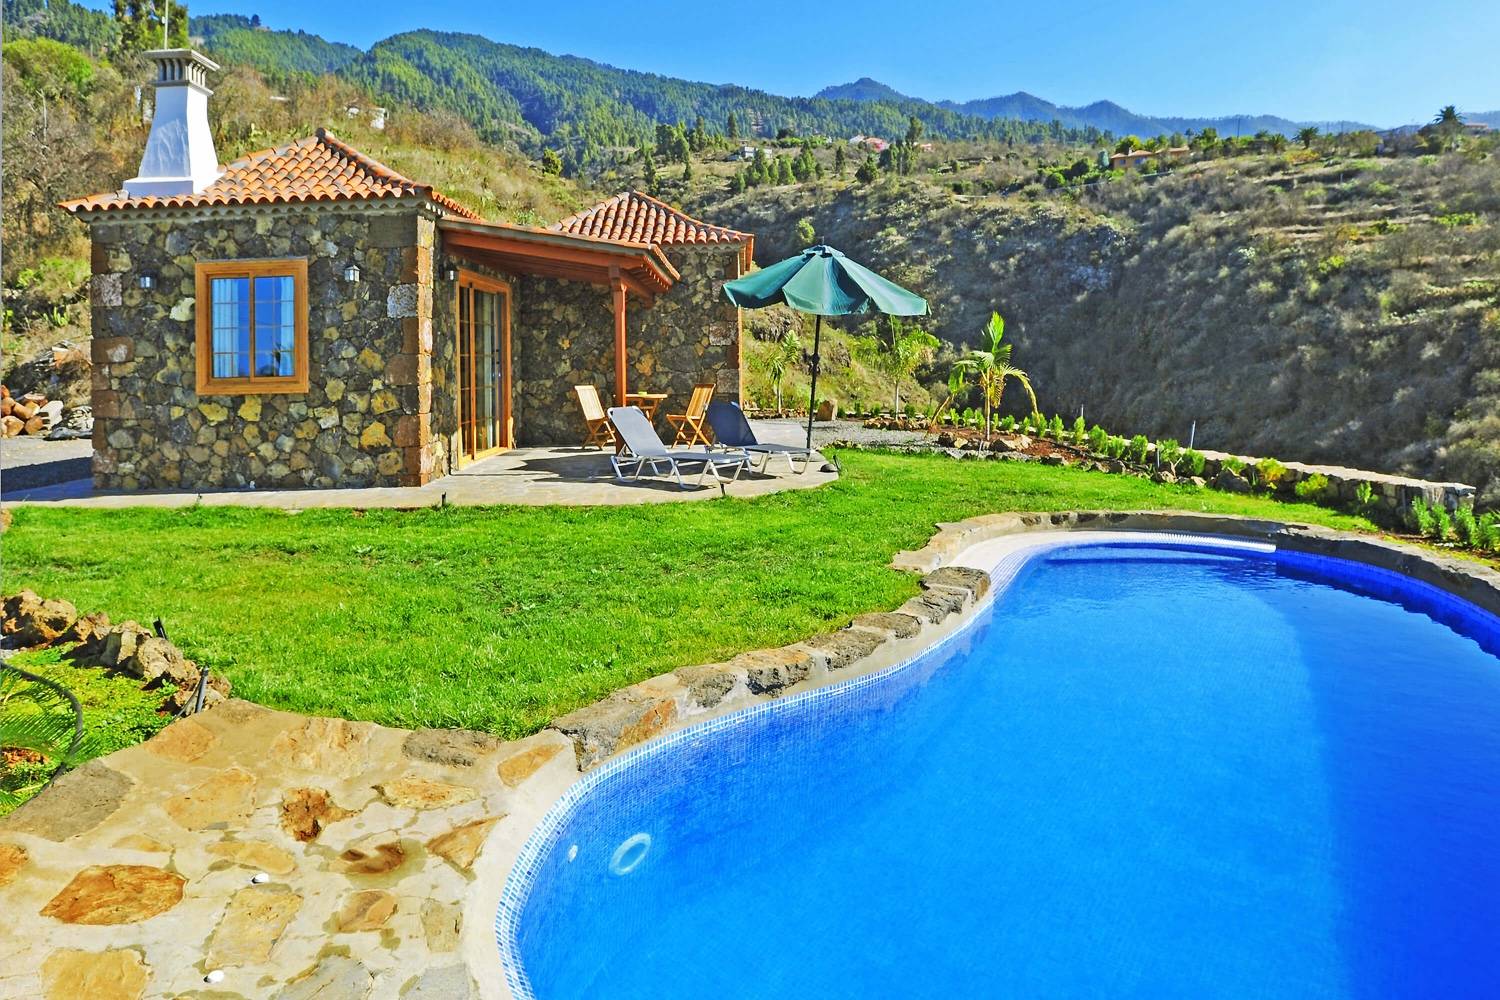 Bella casa in pietra arredata con materiali di alta qualità, con piscina privata con sistema di acqua salata e buona posizione con splendide viste sulle montagne e sul mare